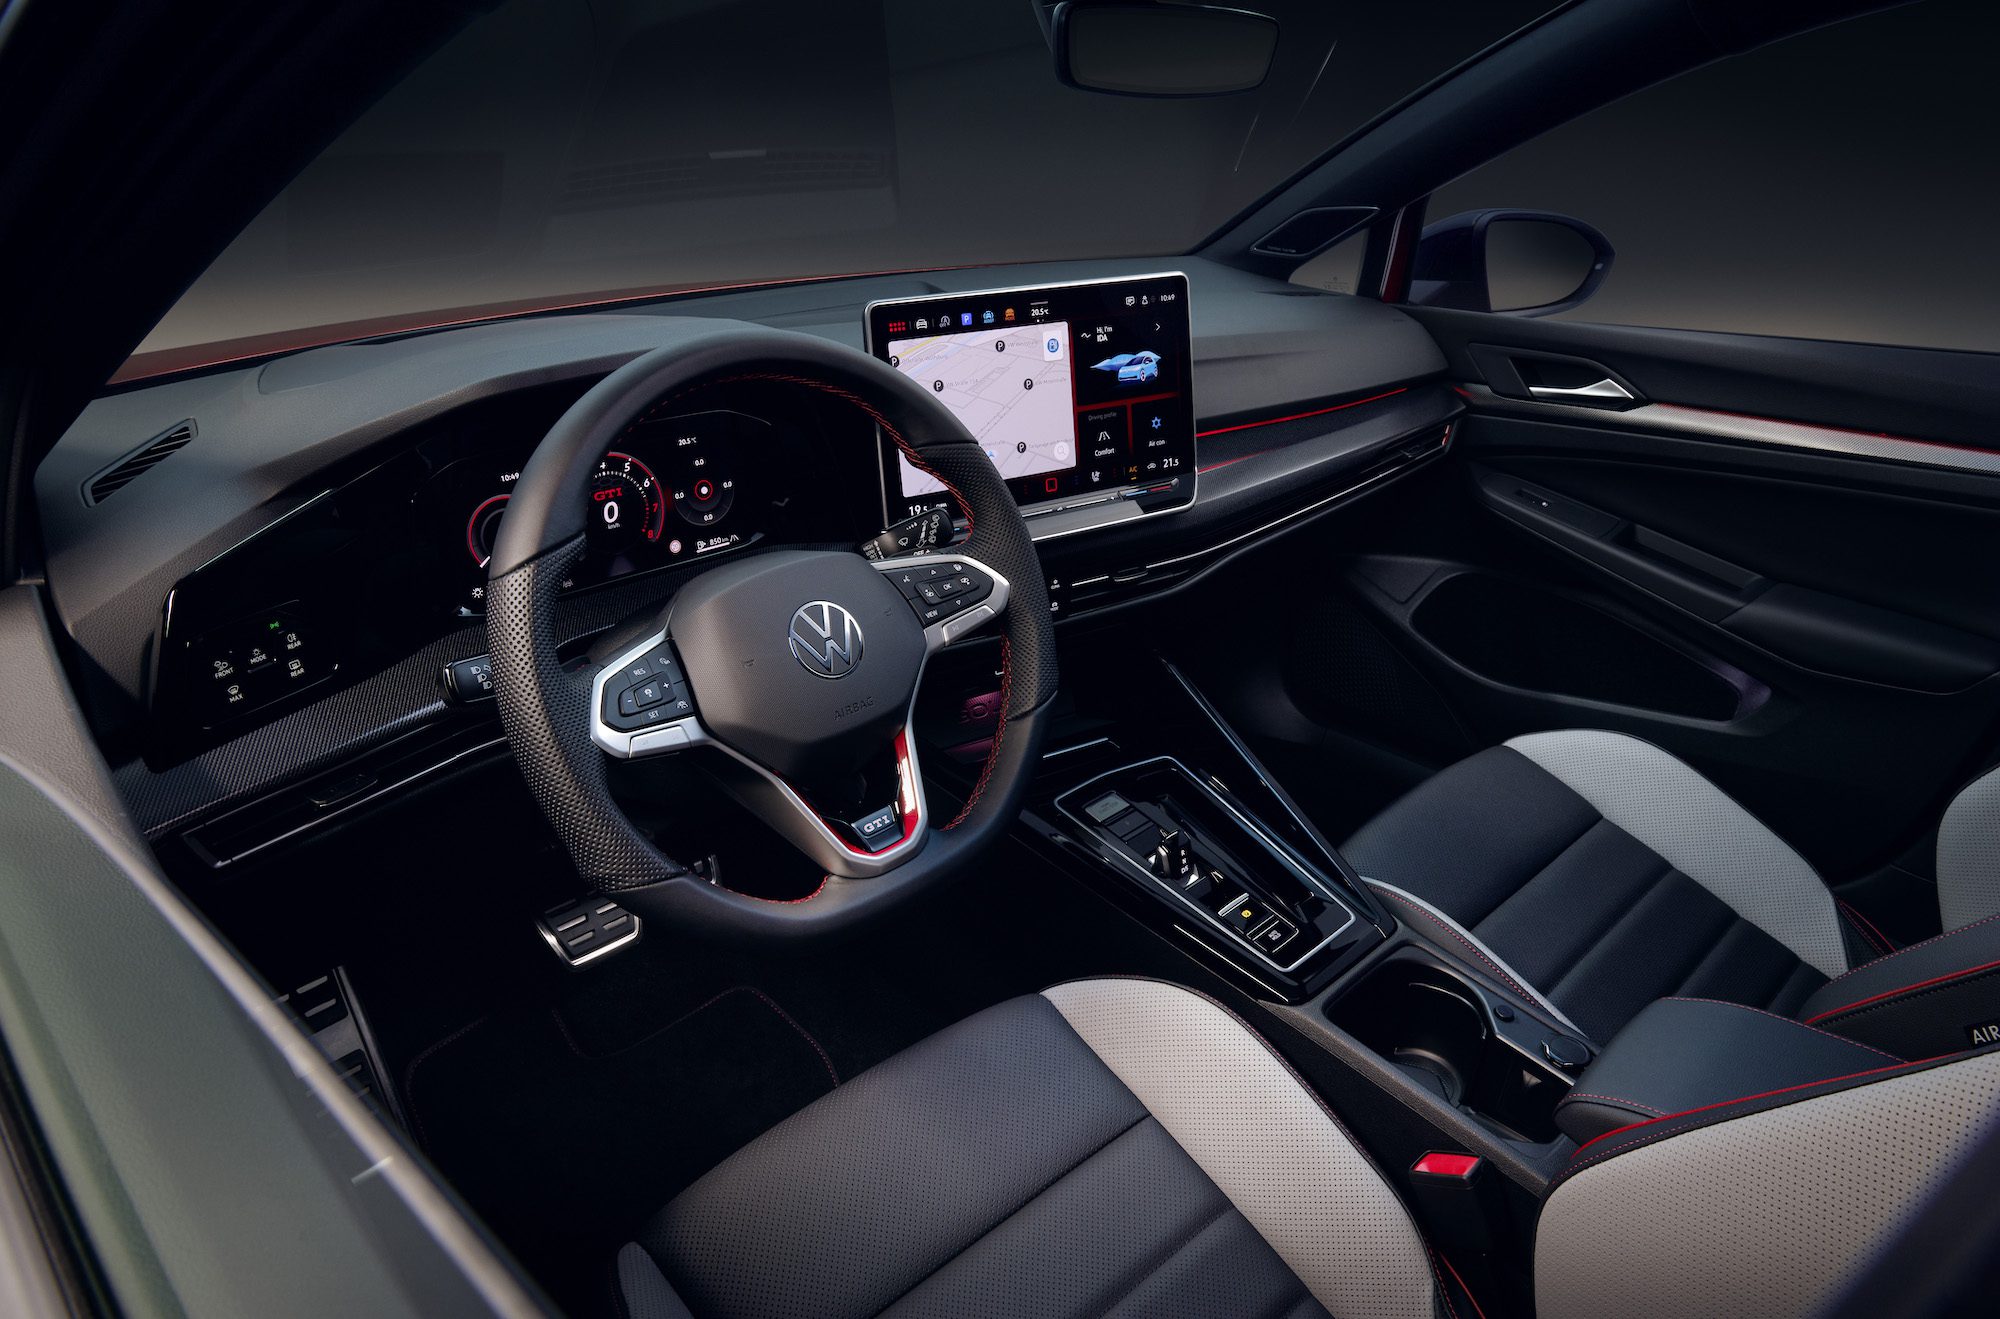 Una imagen que muestra el interior del nuevo Volkswagen Gold, incluido el volante y la pantalla táctil.